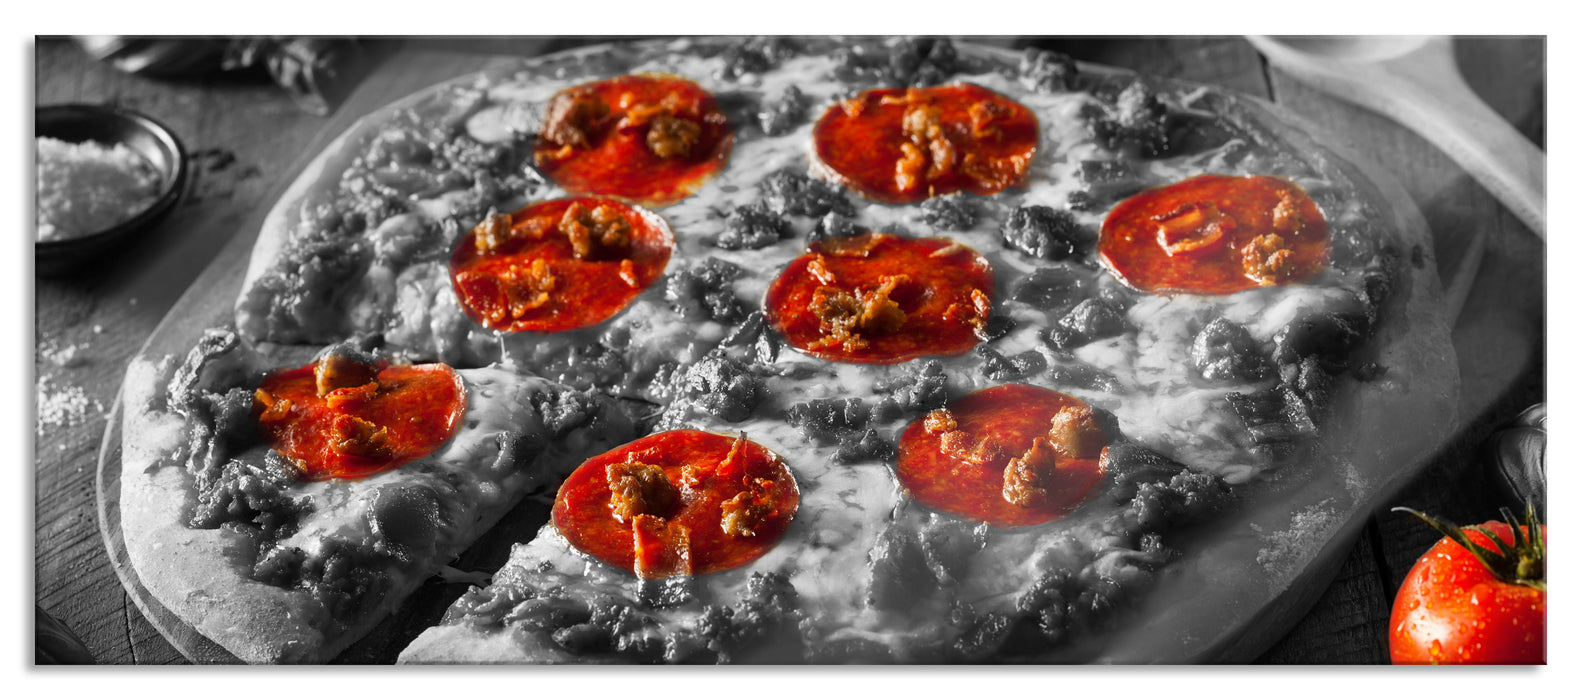 Salamipizza frisch aus dem Ofen, Glasbild Panorama